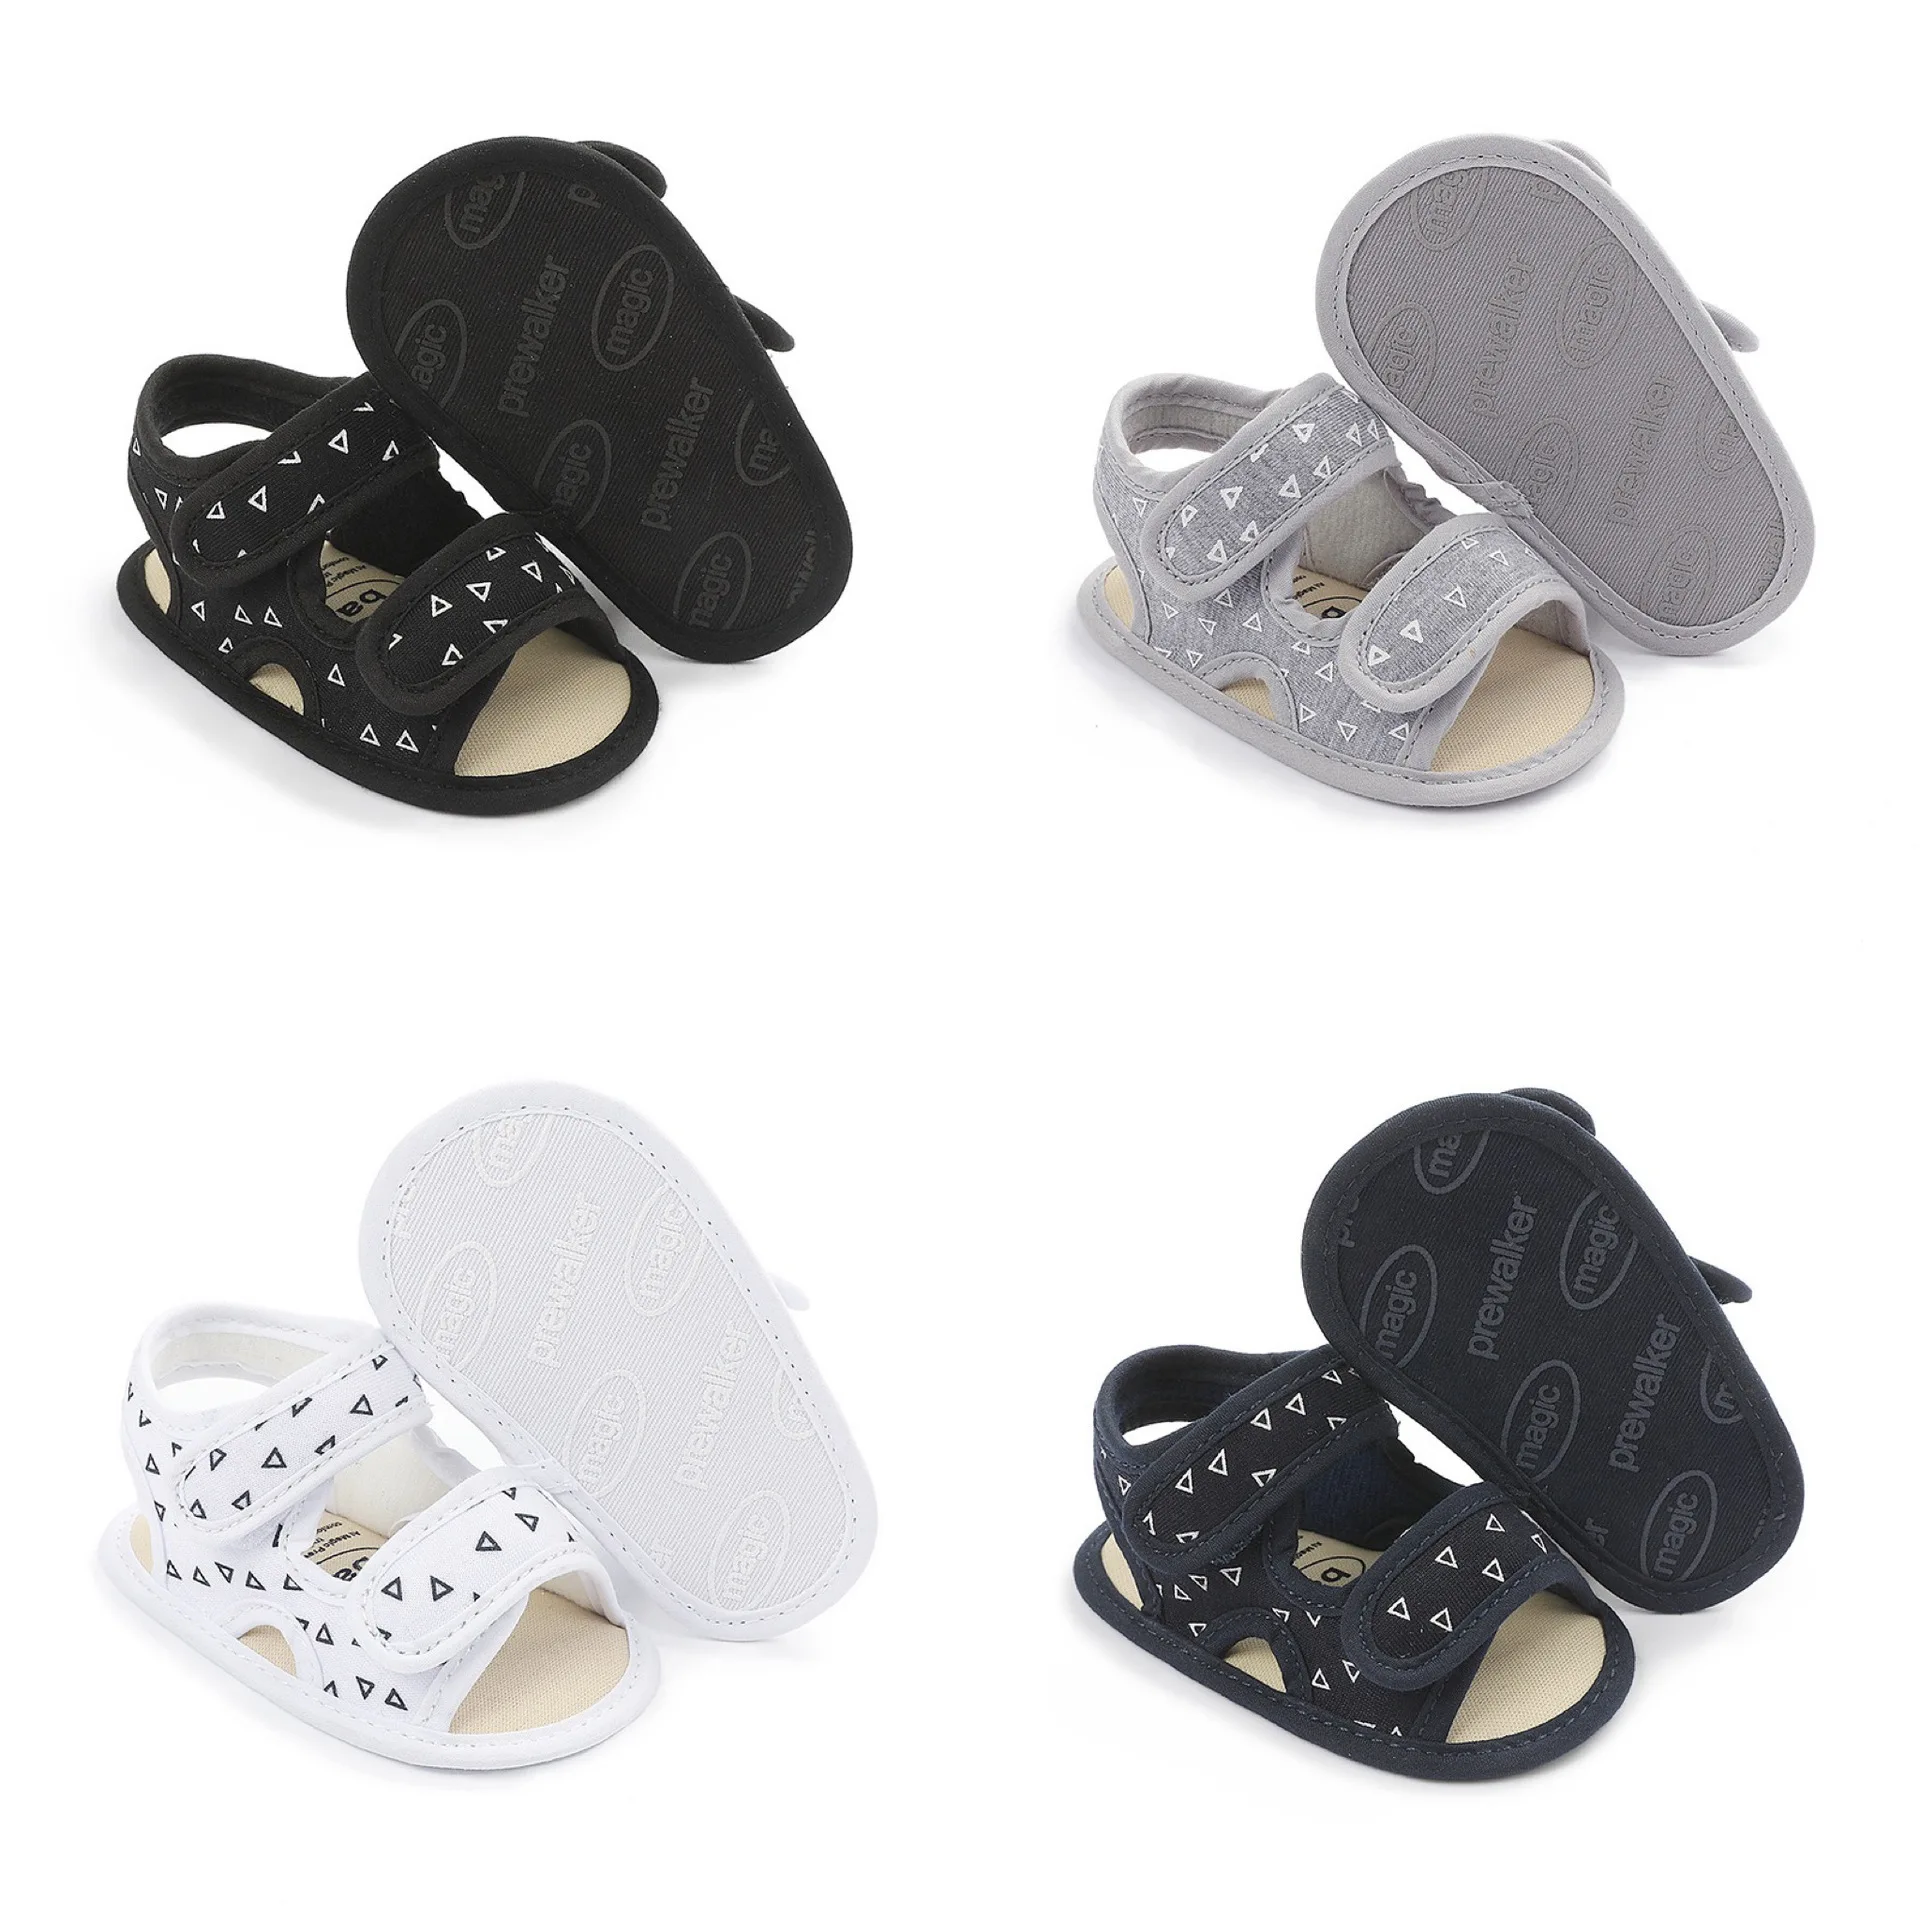 Summer hot sell cute design cotton fiber infant first walker baby girl boy sandals shoes